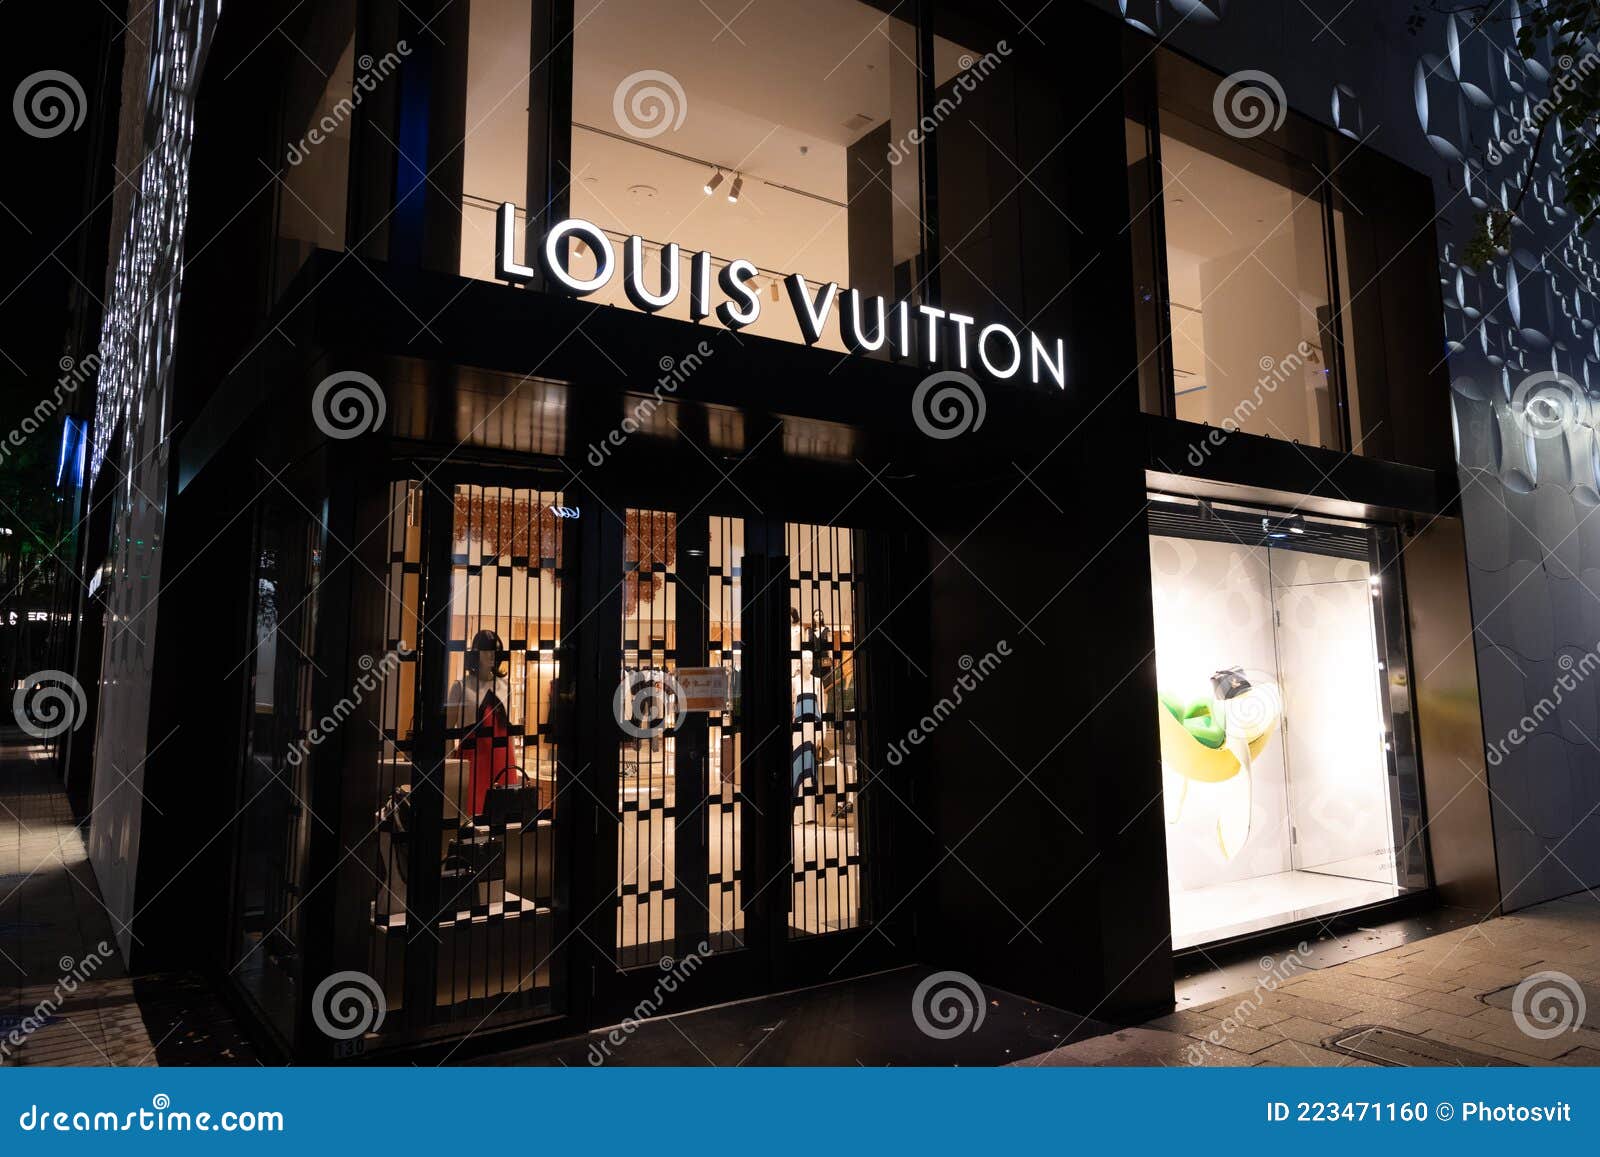 Louis Vuitton - Fort Lauderdale, FL 33304